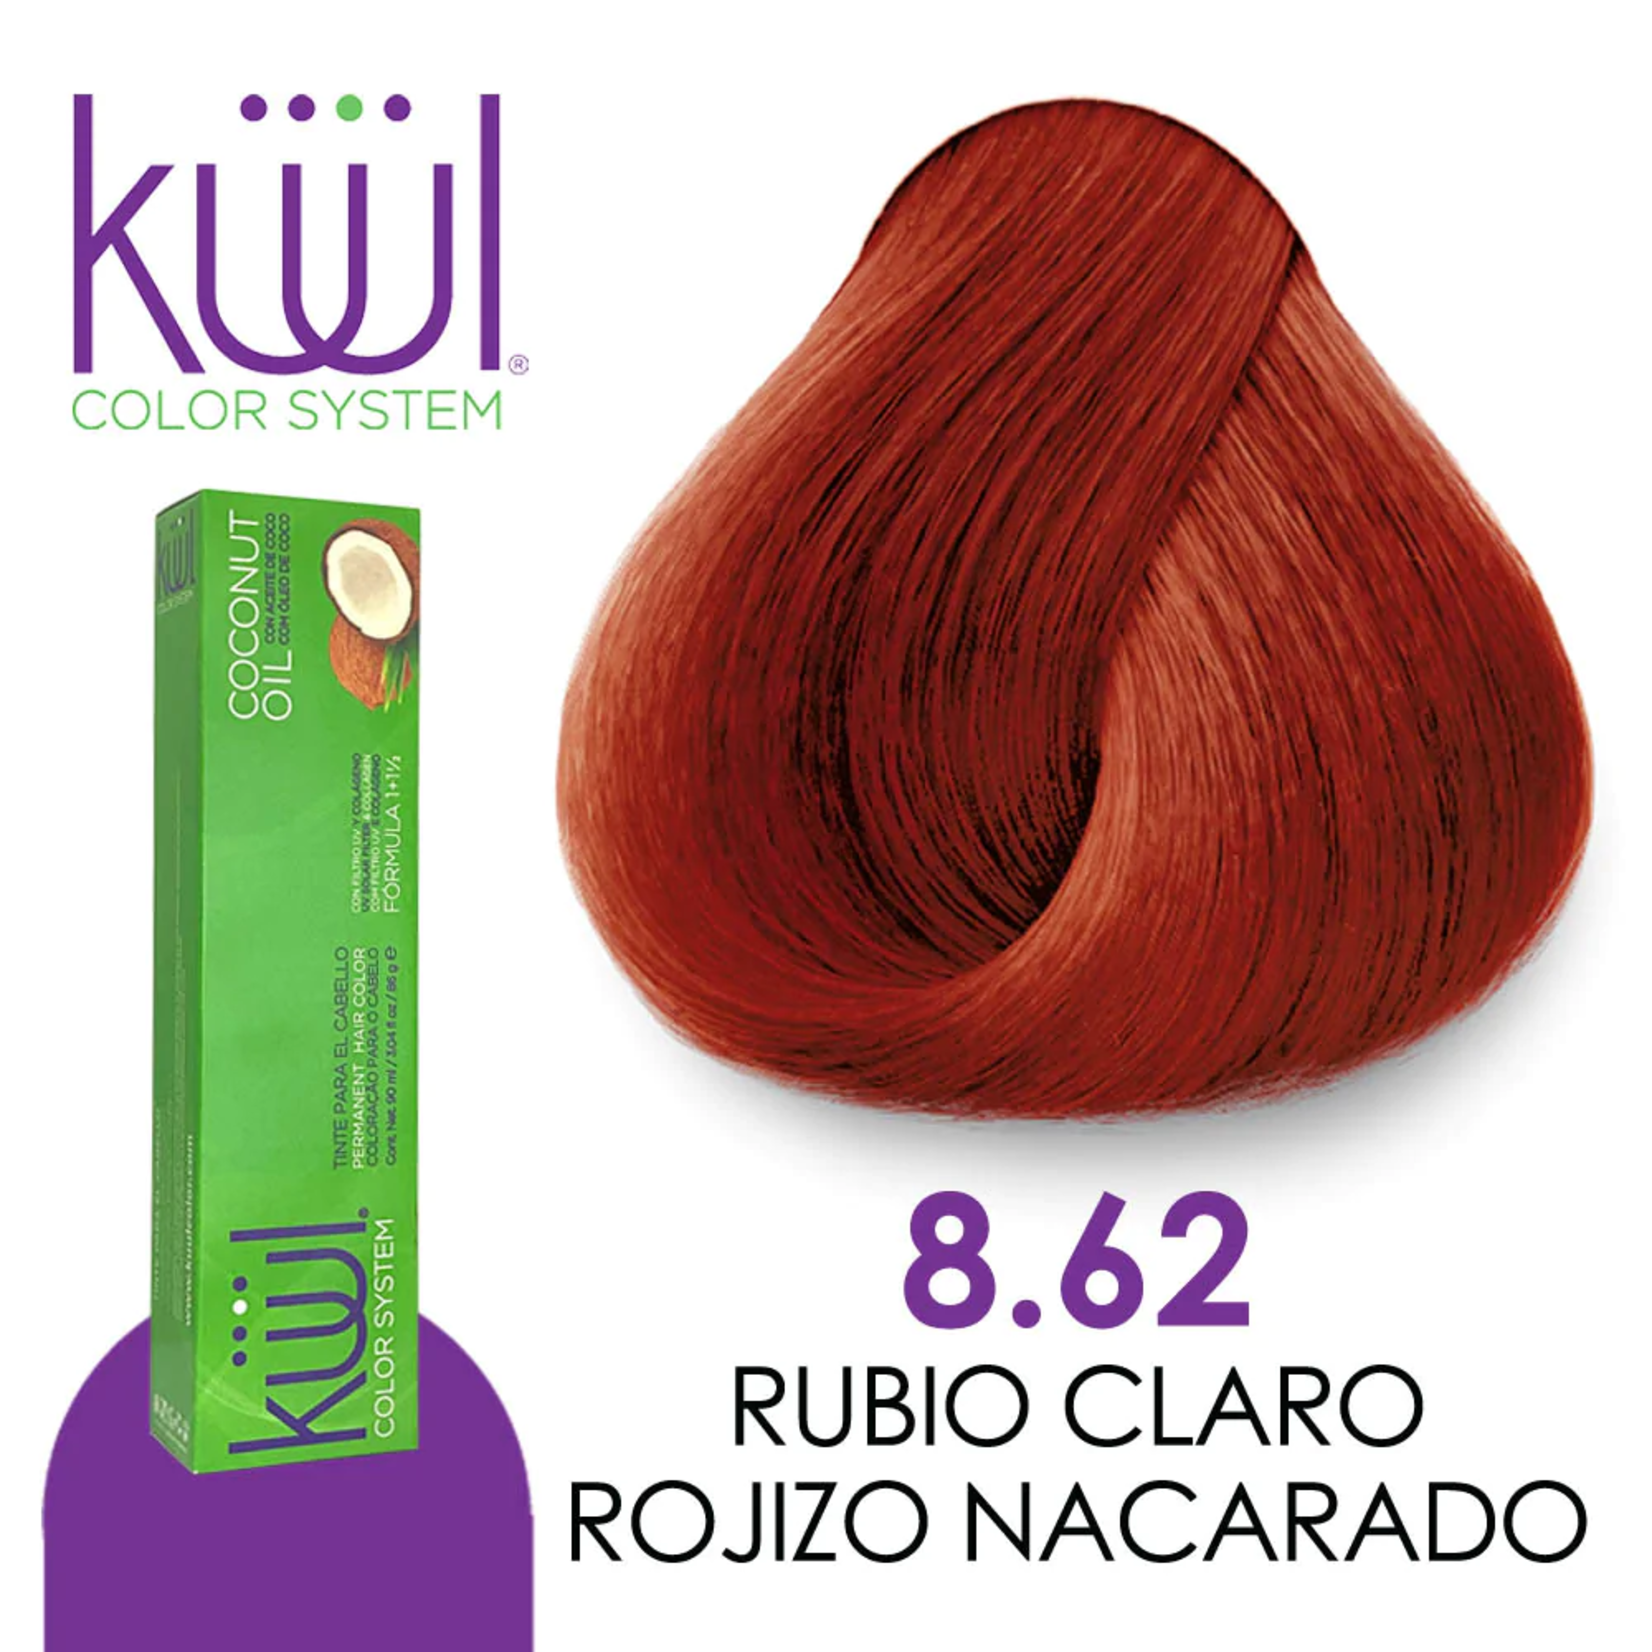 Kuul Tinte para cabello Kuul 8.62 Rubio claro rojo nacarado